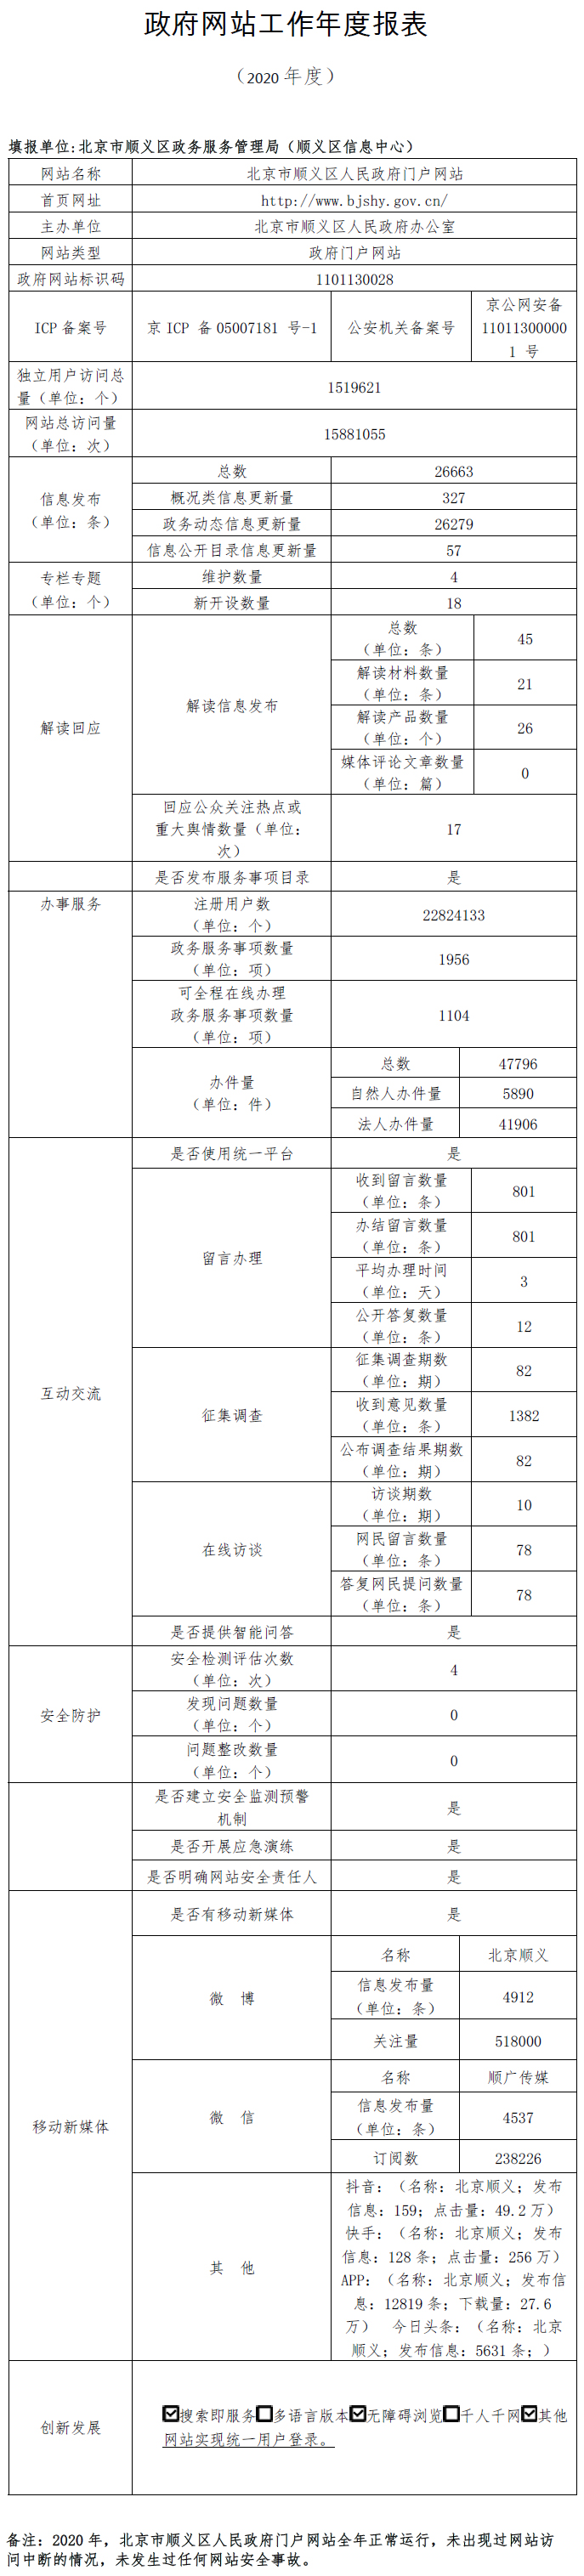 北京市順義區人民政府2020年政府網站年度工作報表